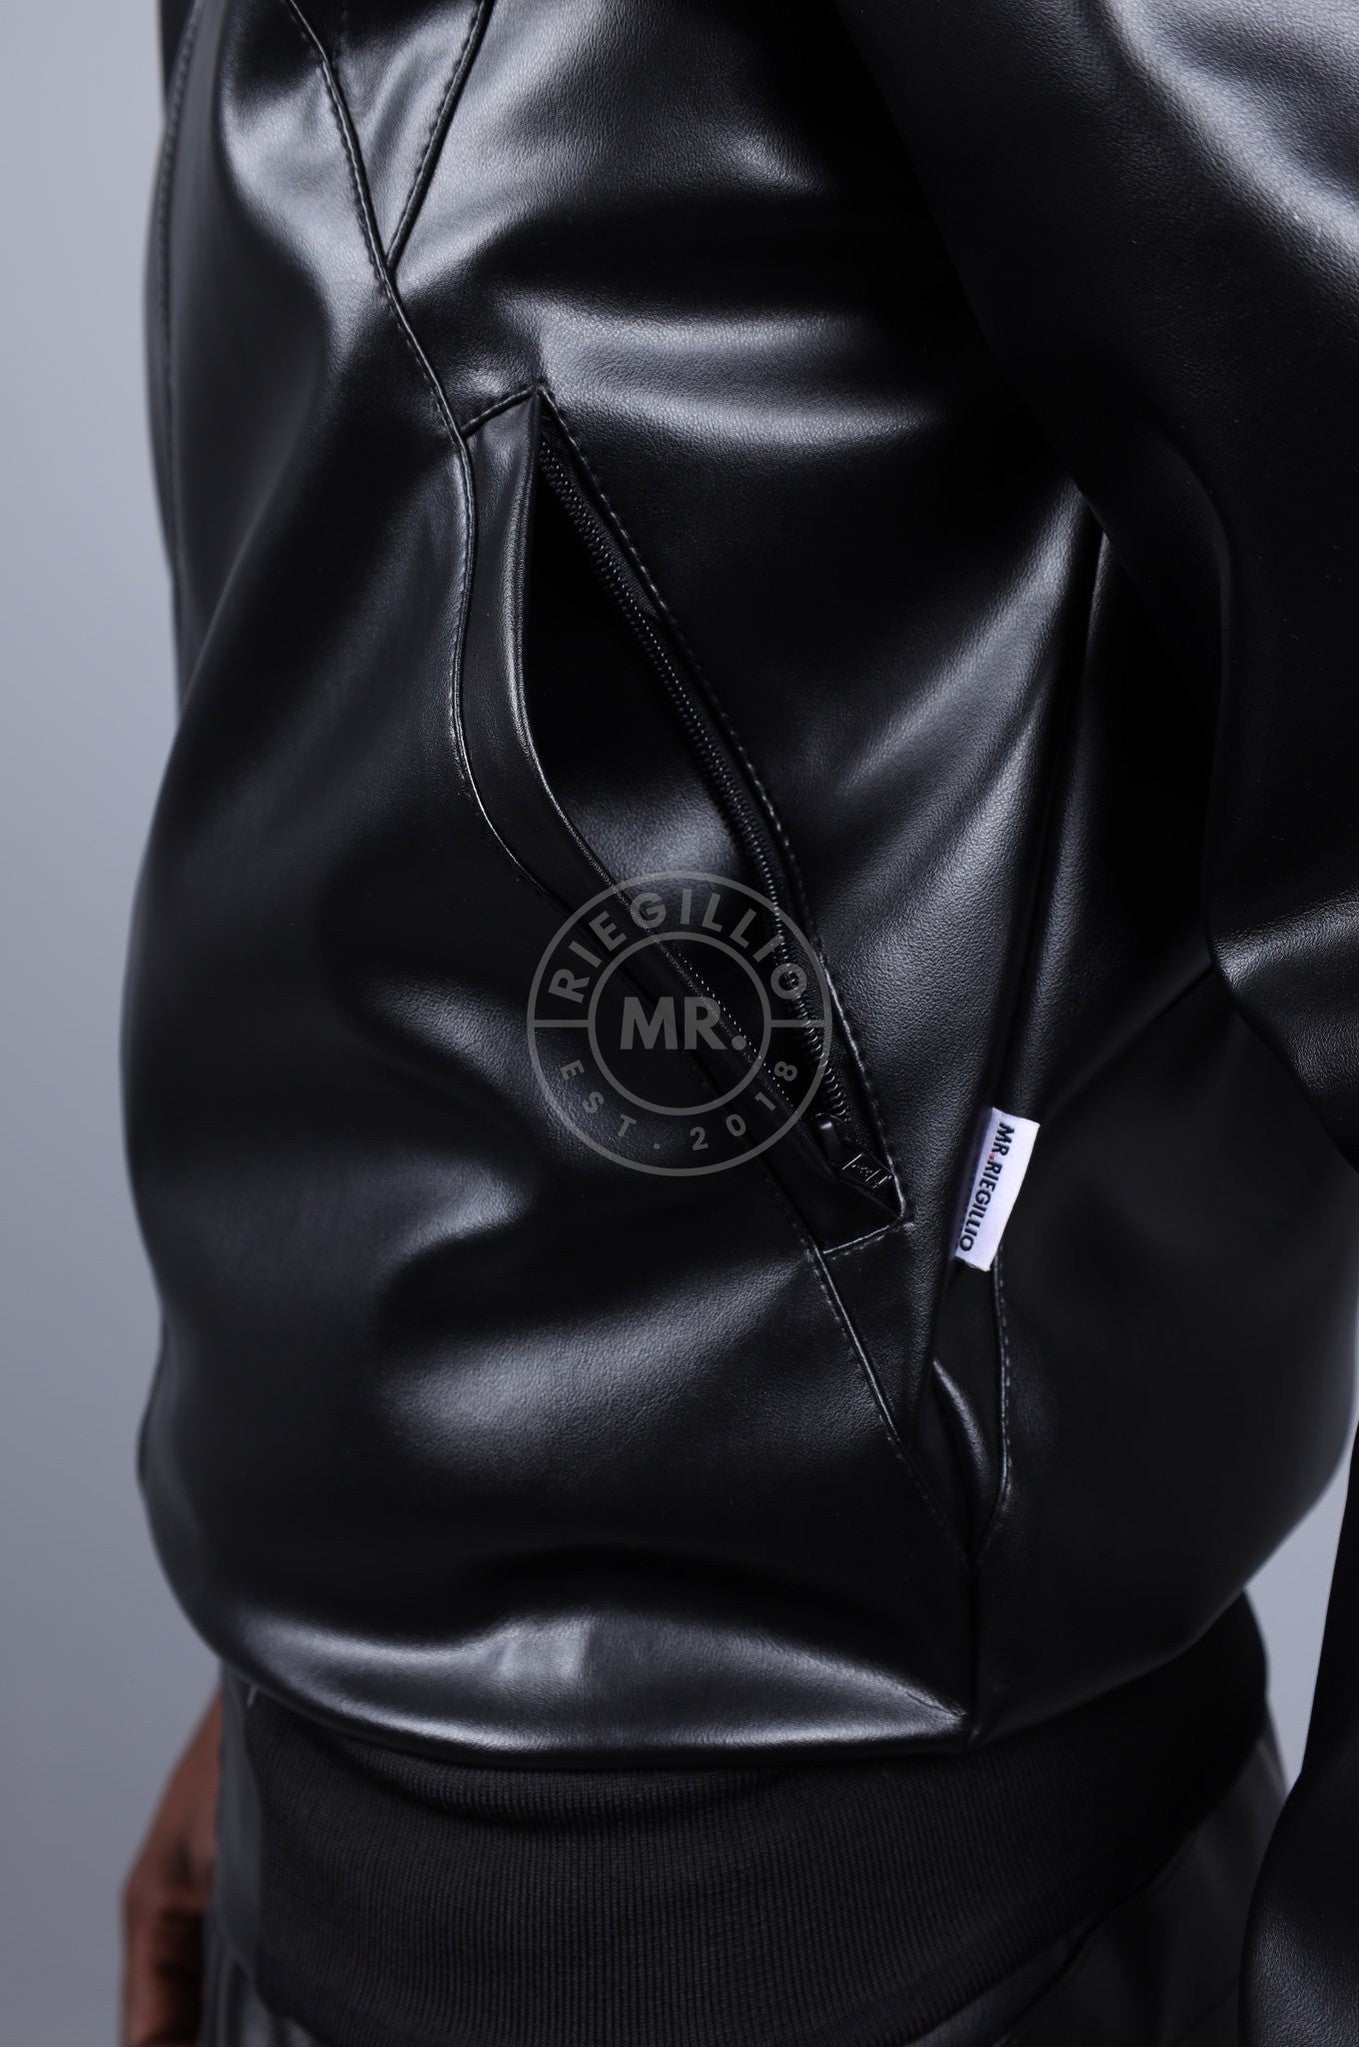 MR. 24 Tracksuit Jacket - Black at MR. Riegillio